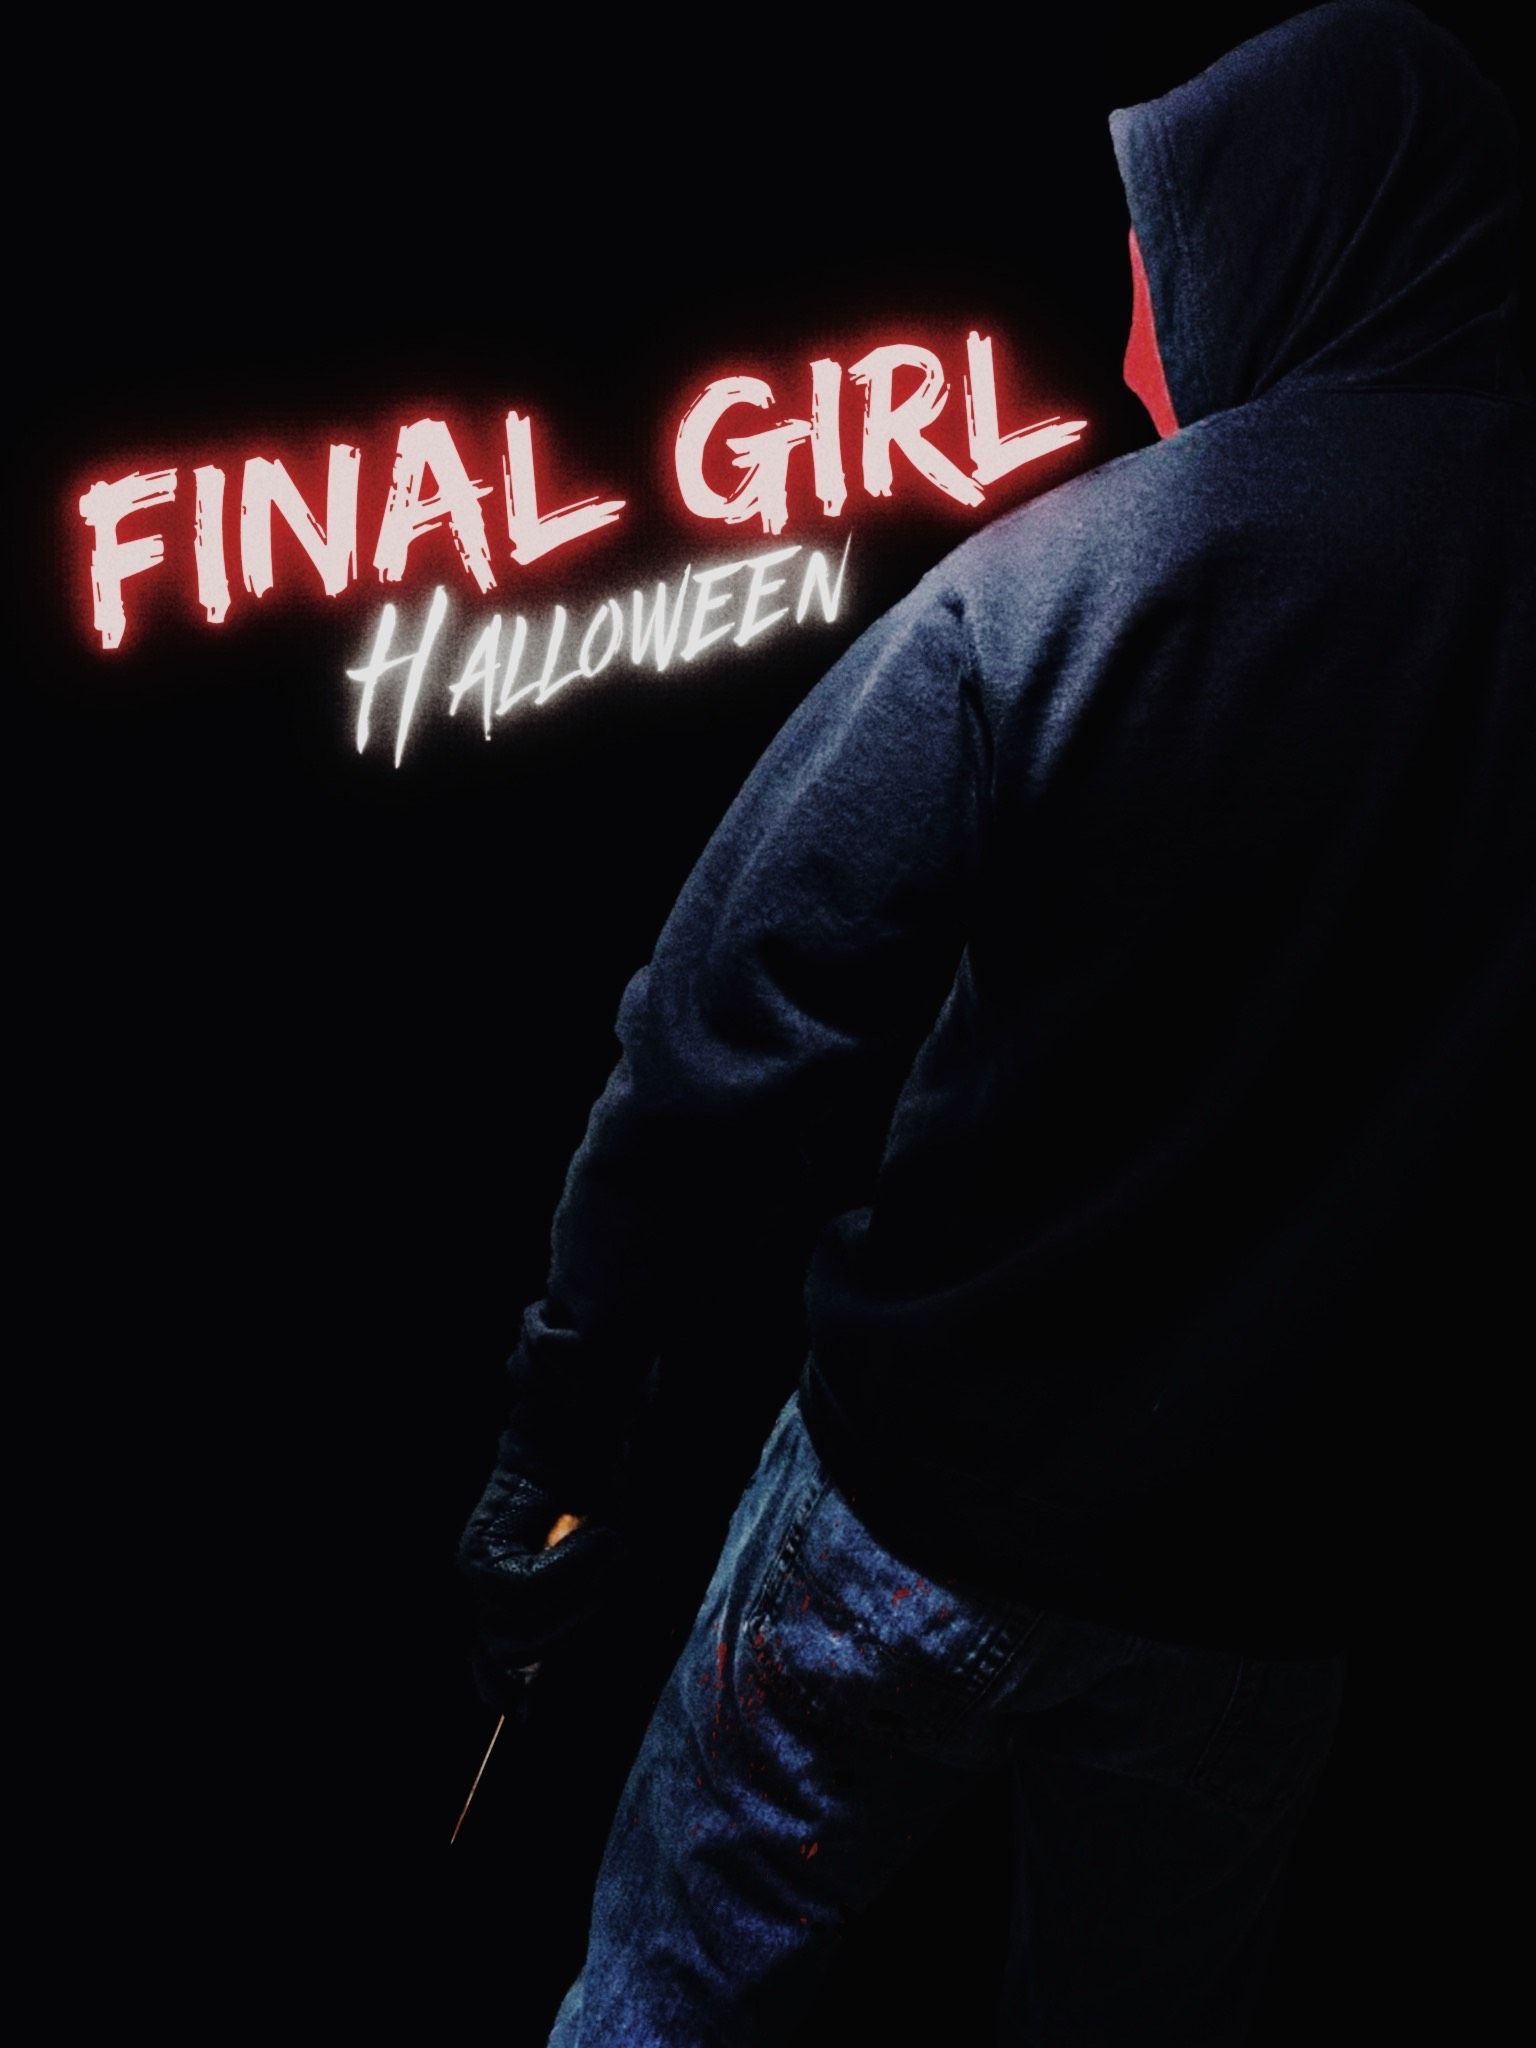 Final Girl: Halloween